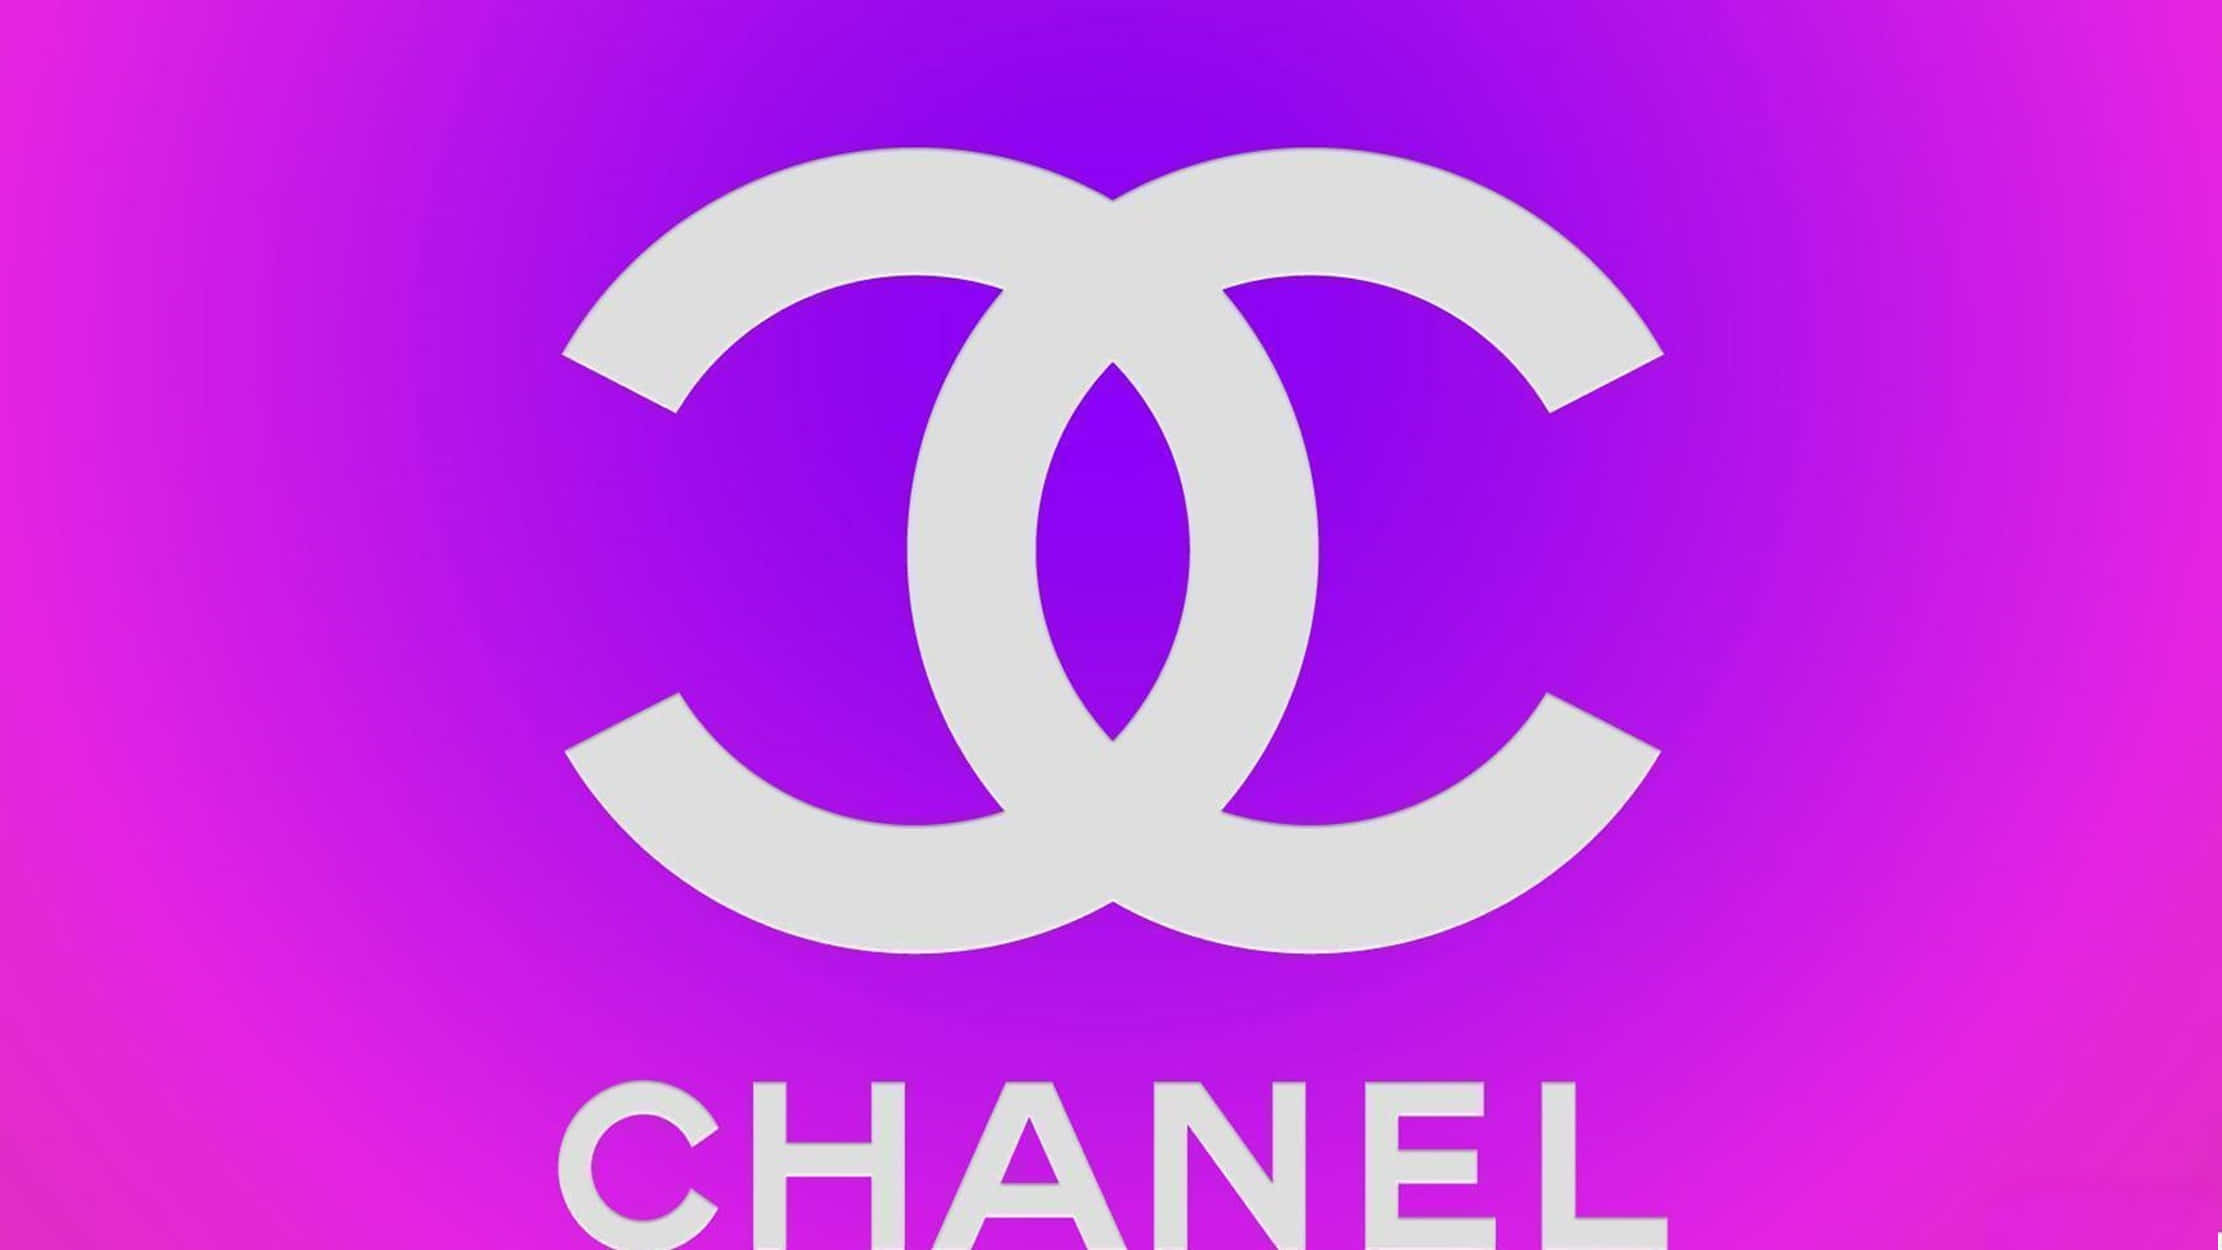 Chanel Girly Wallpaper